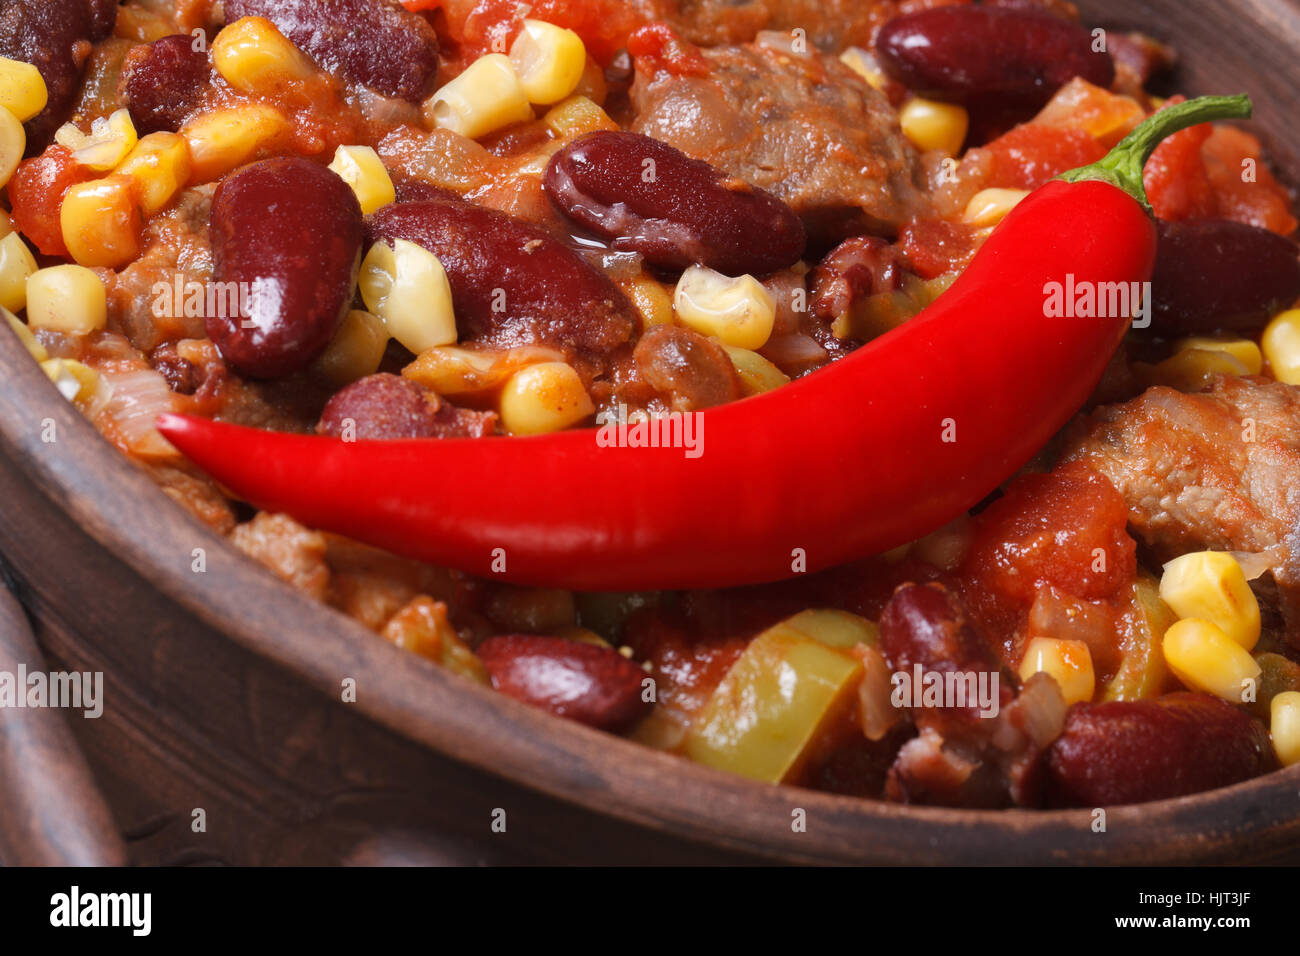 Kidneybohnen In Chili Con Carne Stockfotos und -bilder Kaufen - Alamy